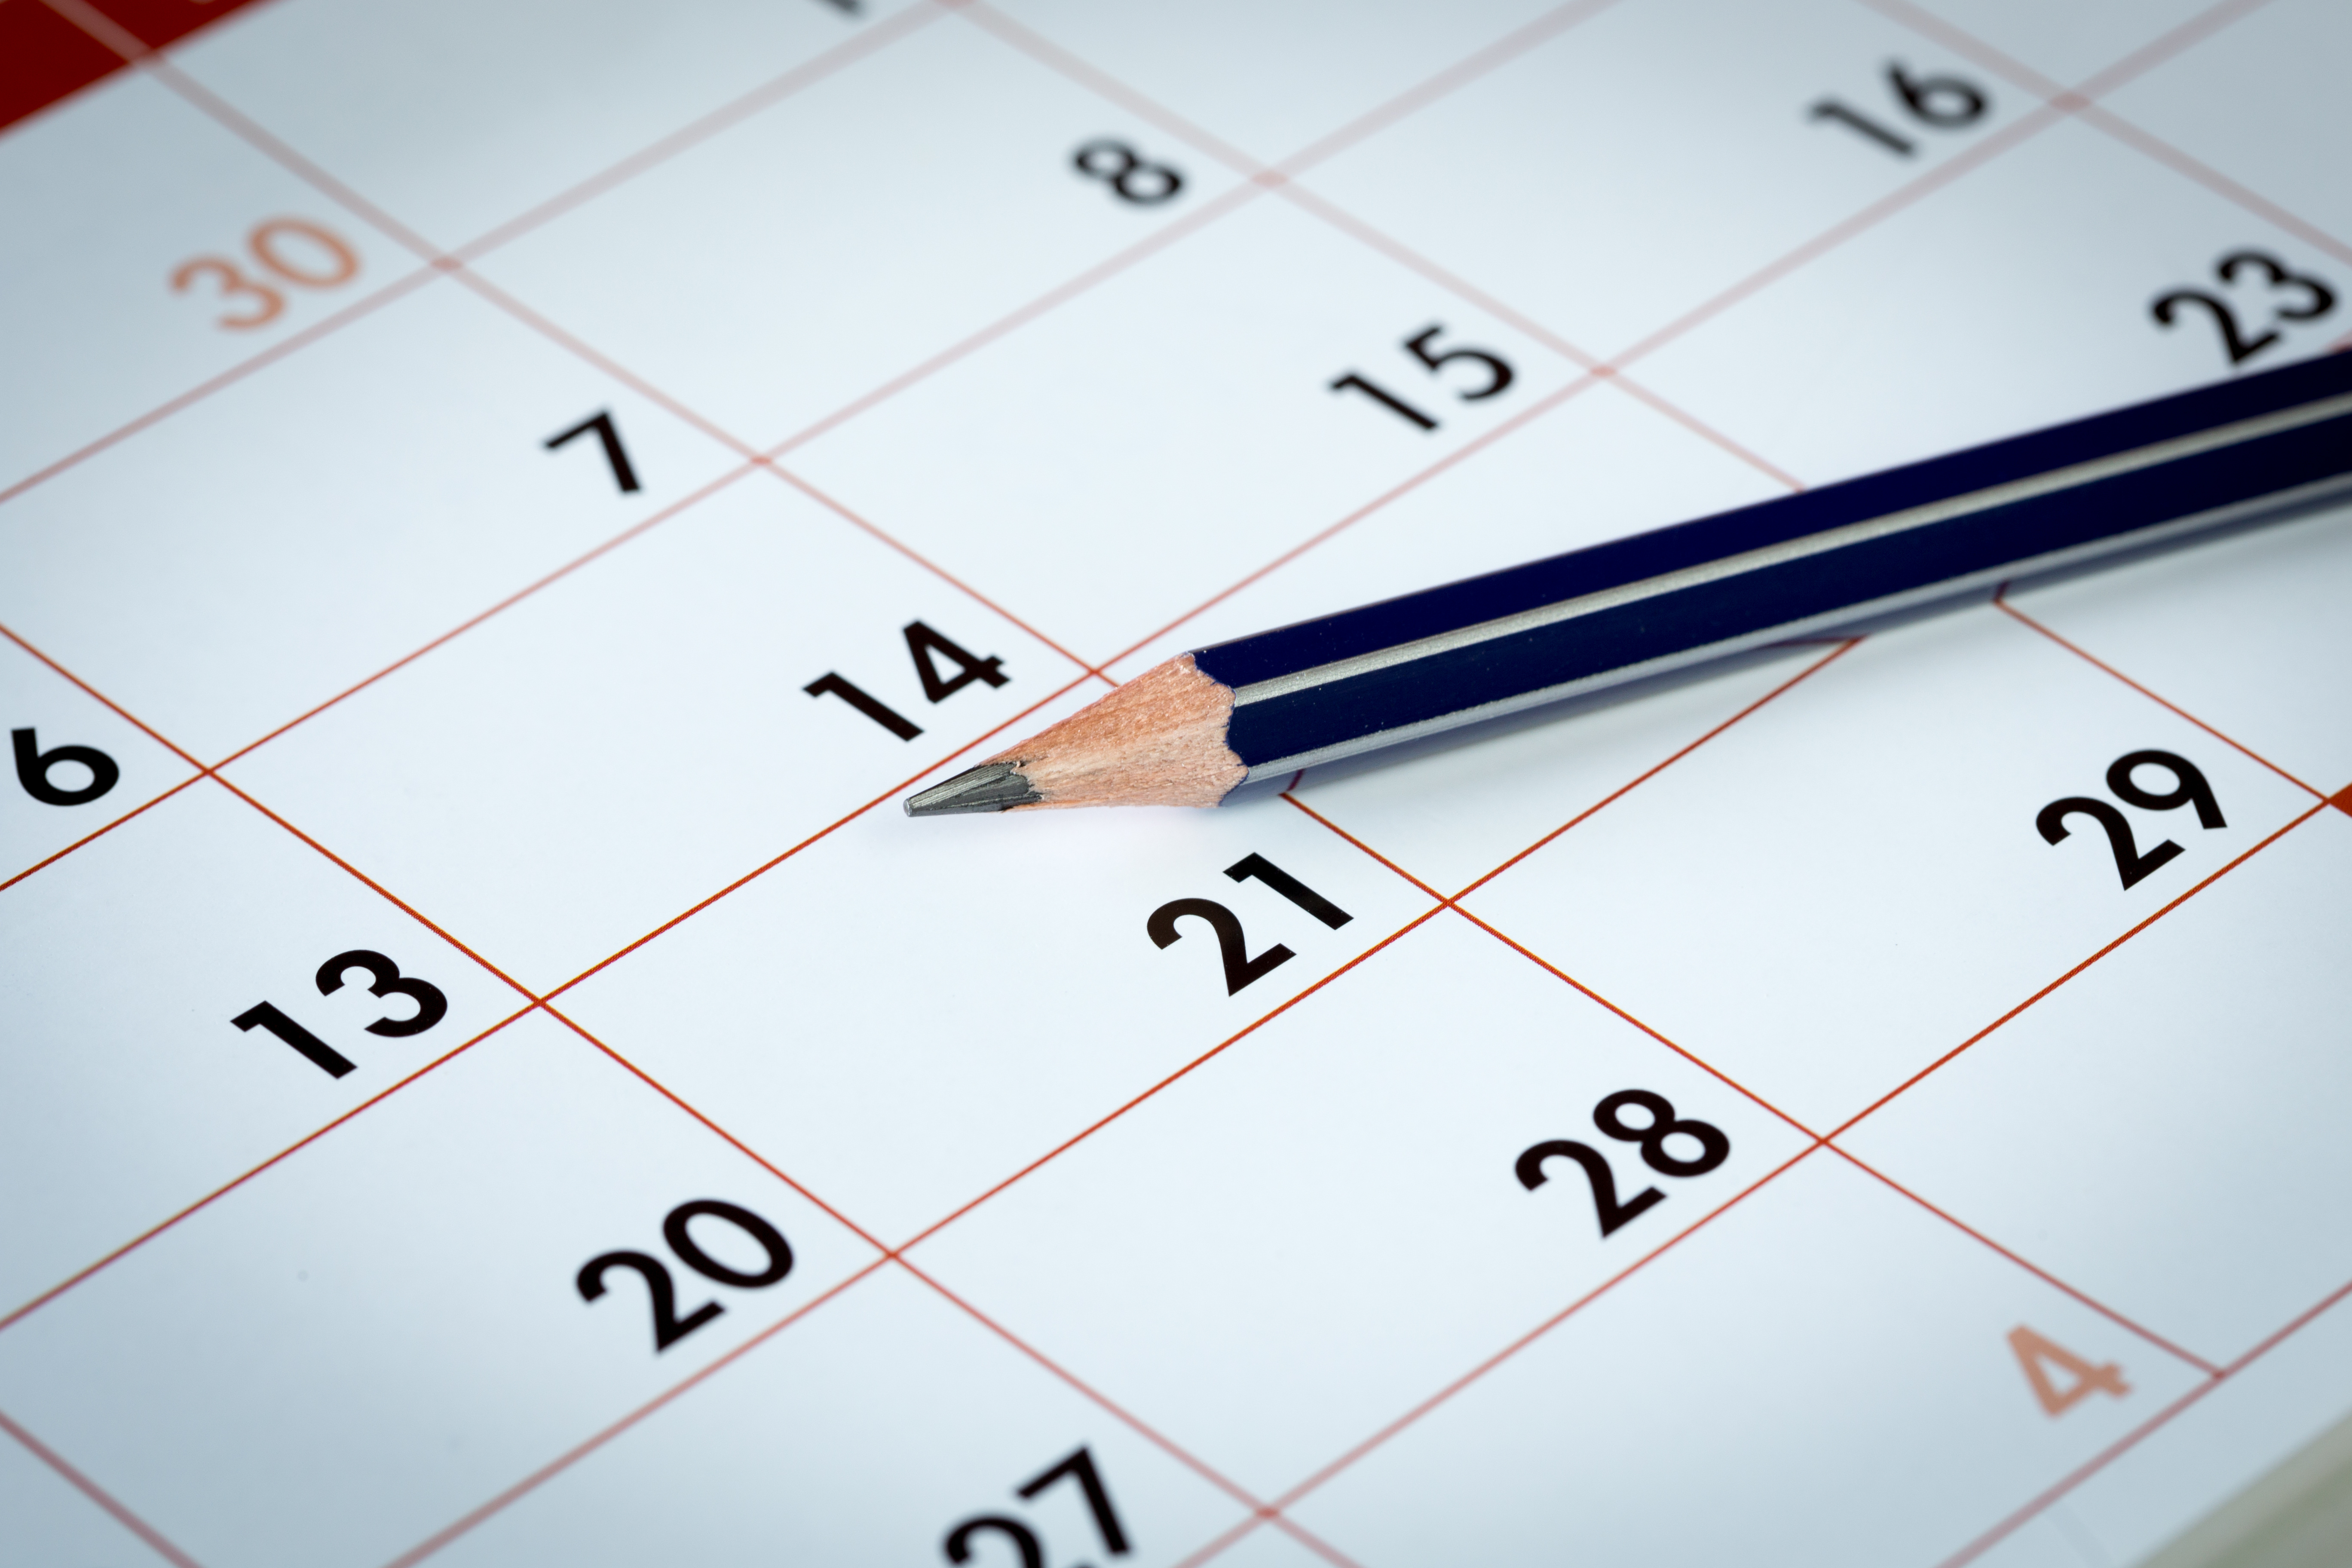 Ein Bleistift liegt auf einer Monatsübersicht eines Kalenders. Die Spitze zeigt auf die Zahl 21.